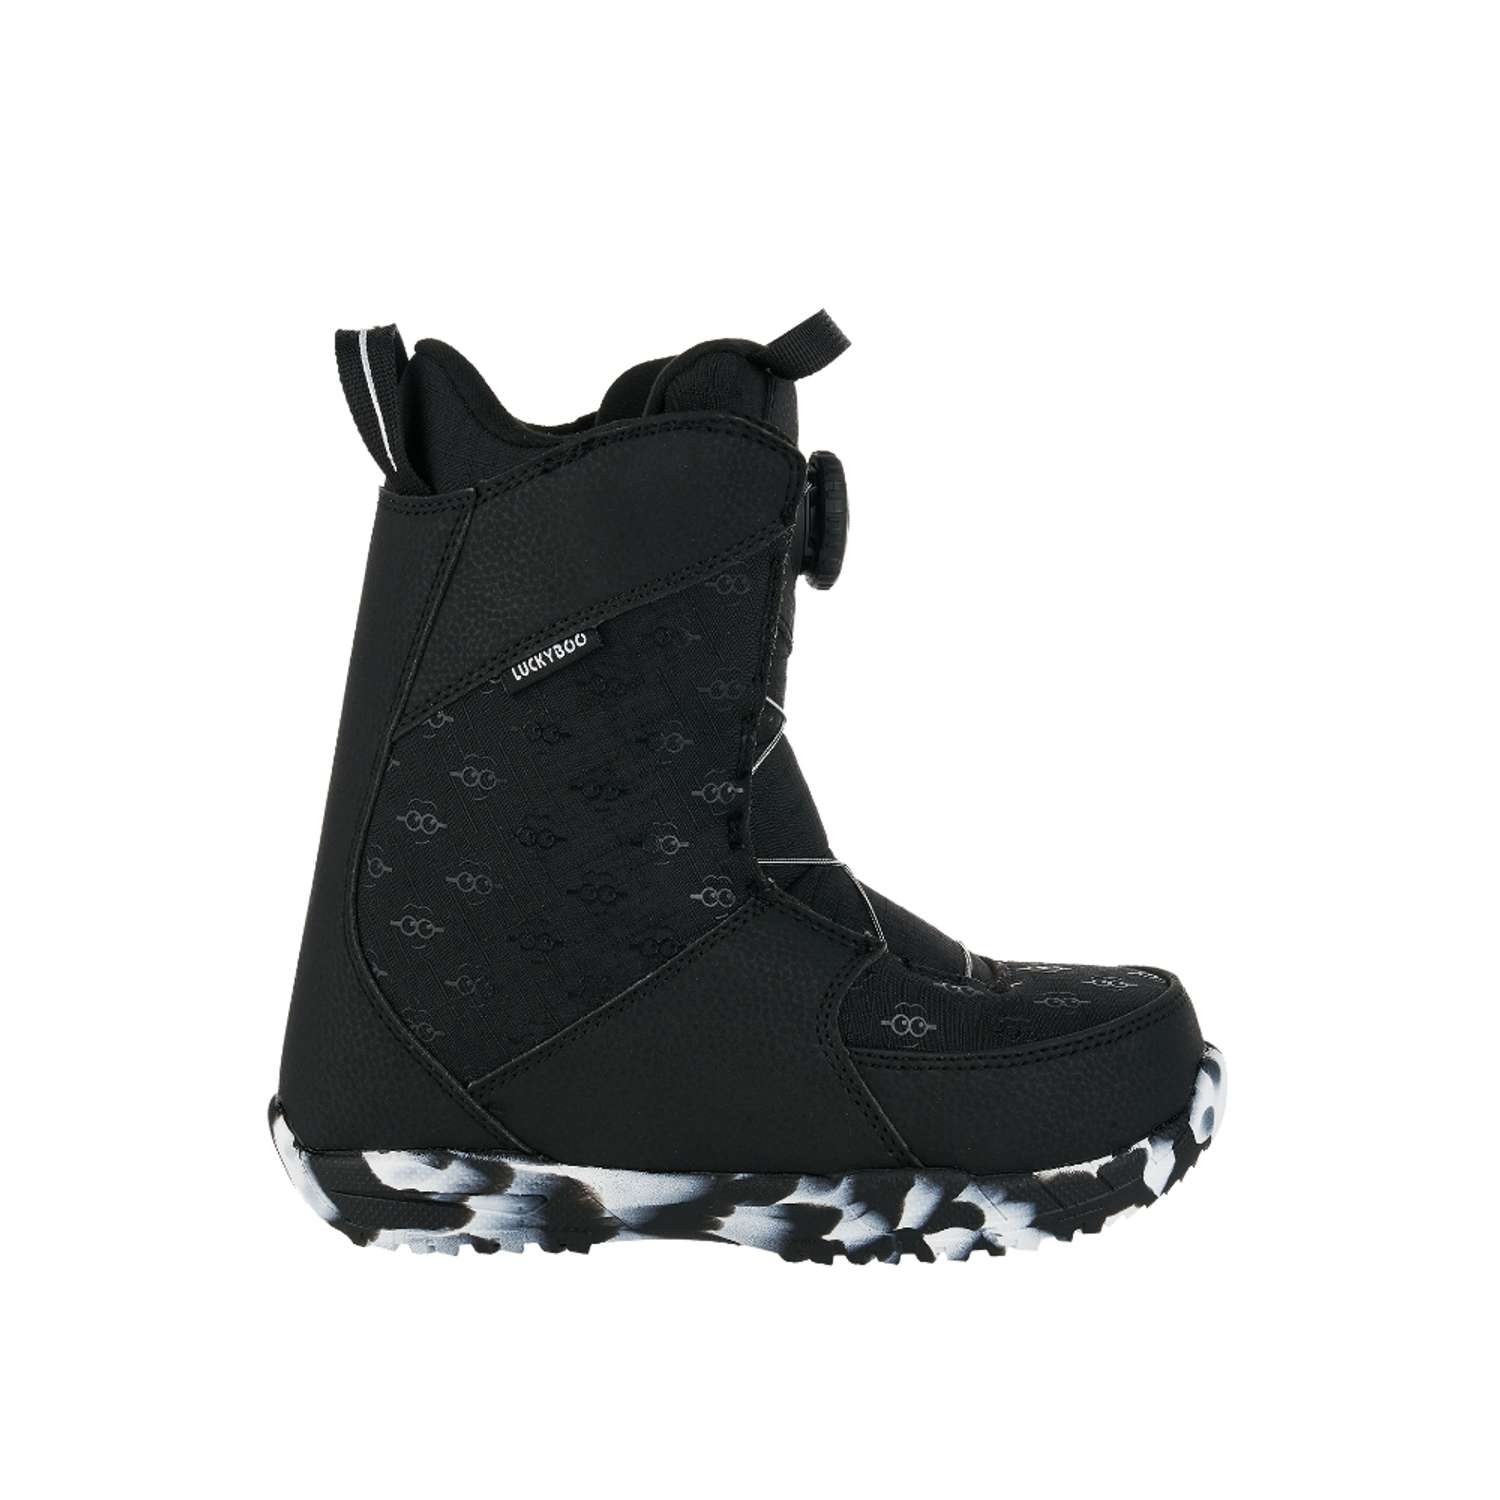 Ботинки для сноуборда Fastec Luckyboo 23cm - фото 2